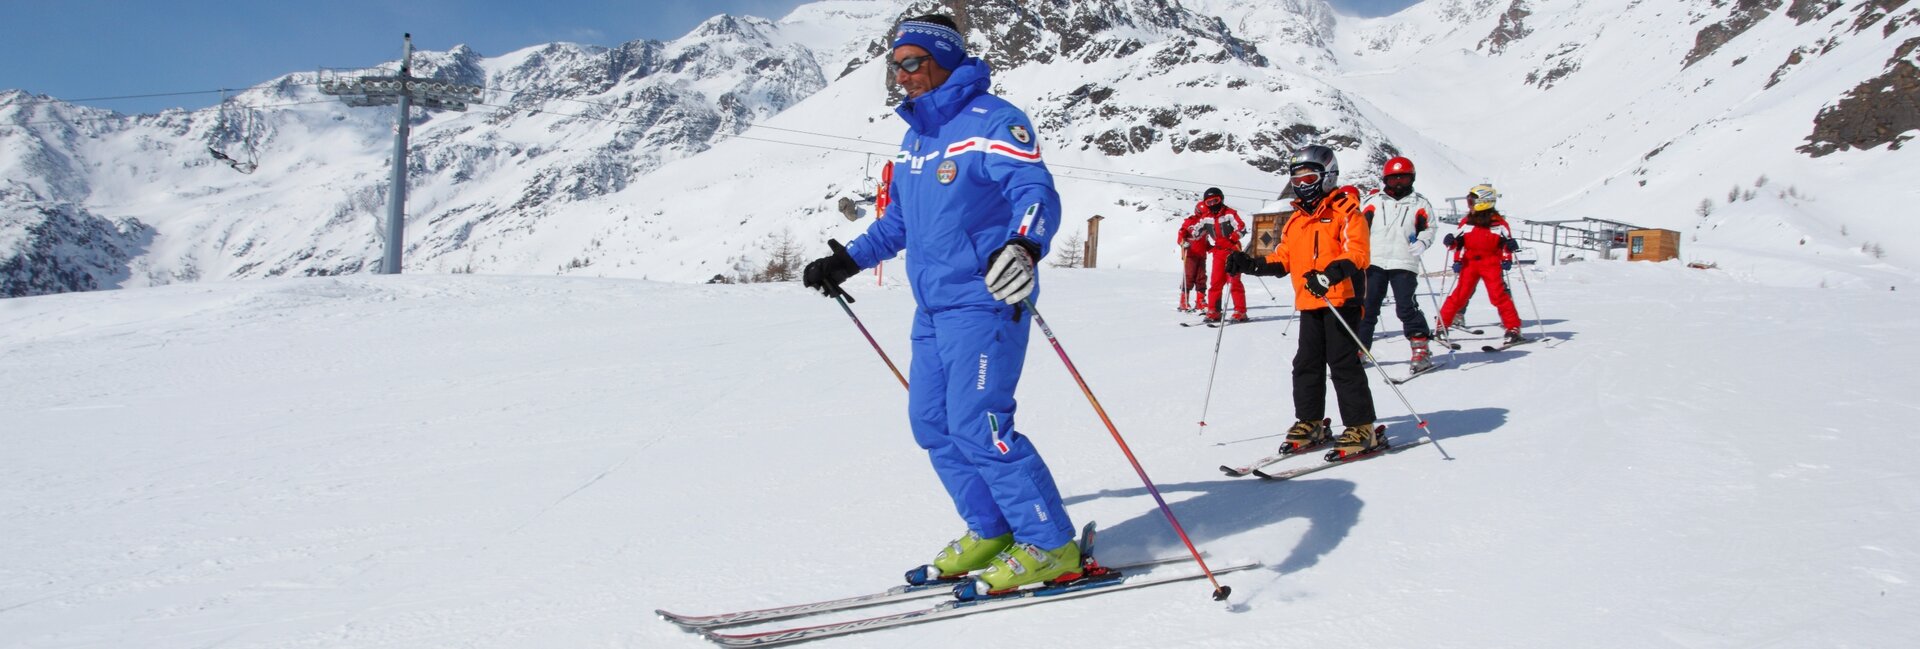 Imaprare a sciare in Val di Sole, a Pejo